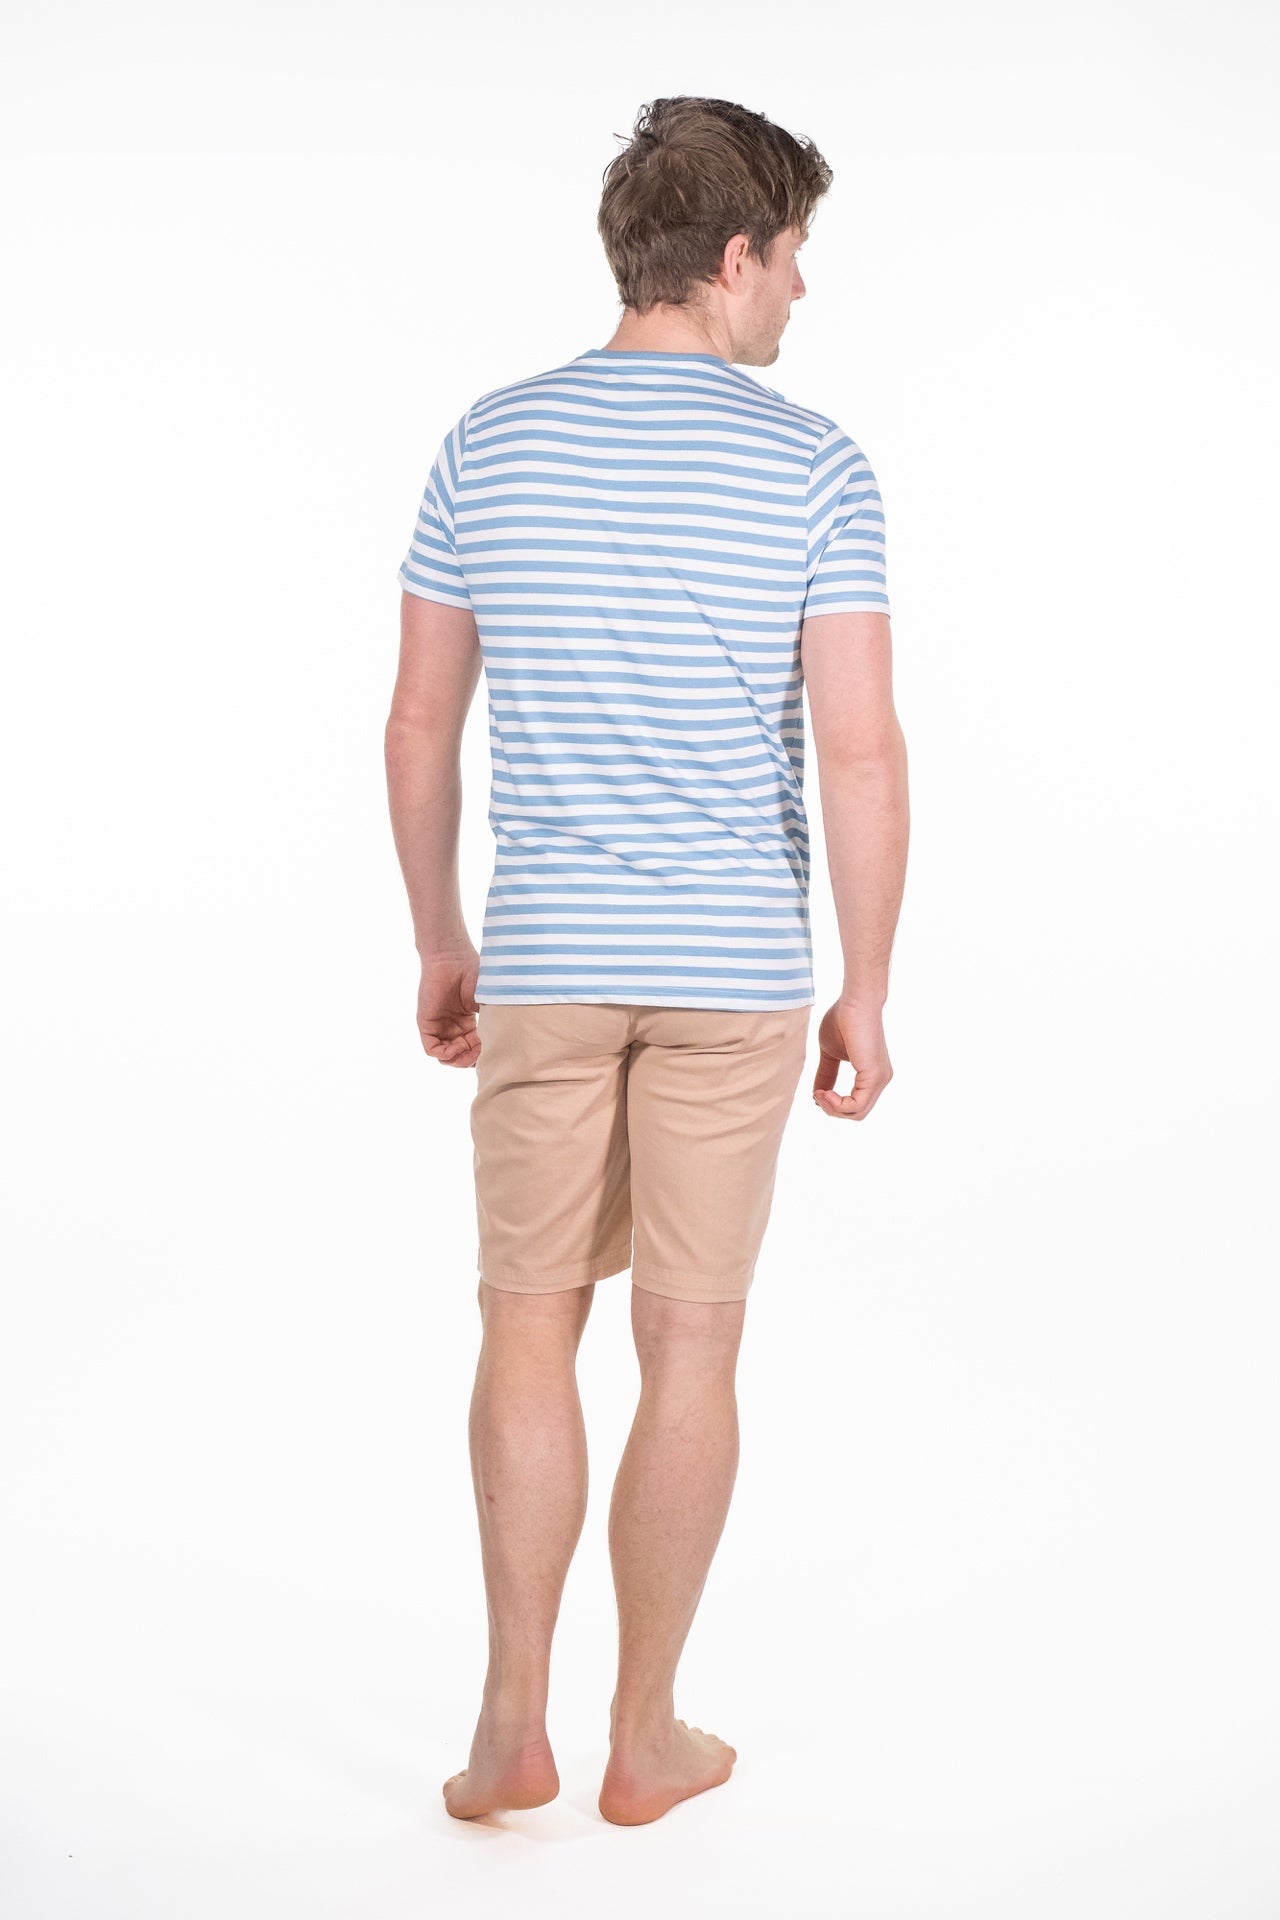 Albie Blue Striped T-Shirt - Rupert and Buckley - T-Shirt